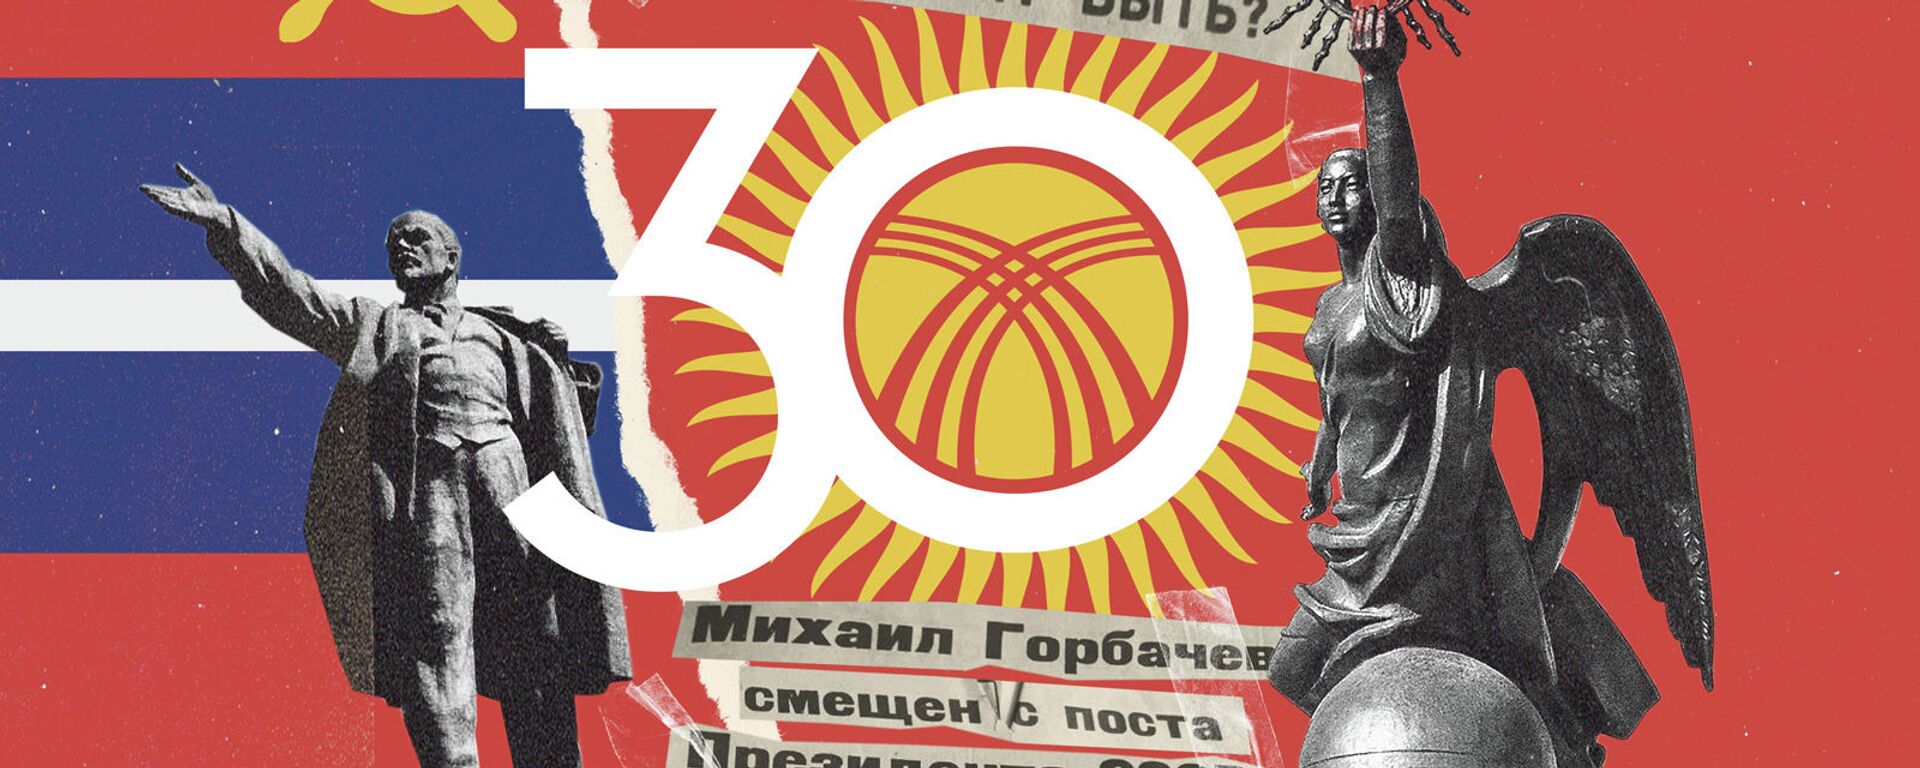 Что творилось в Кыргызстане, когда распадался СССР - Sputnik Кыргызстан, 1920, 30.08.2021